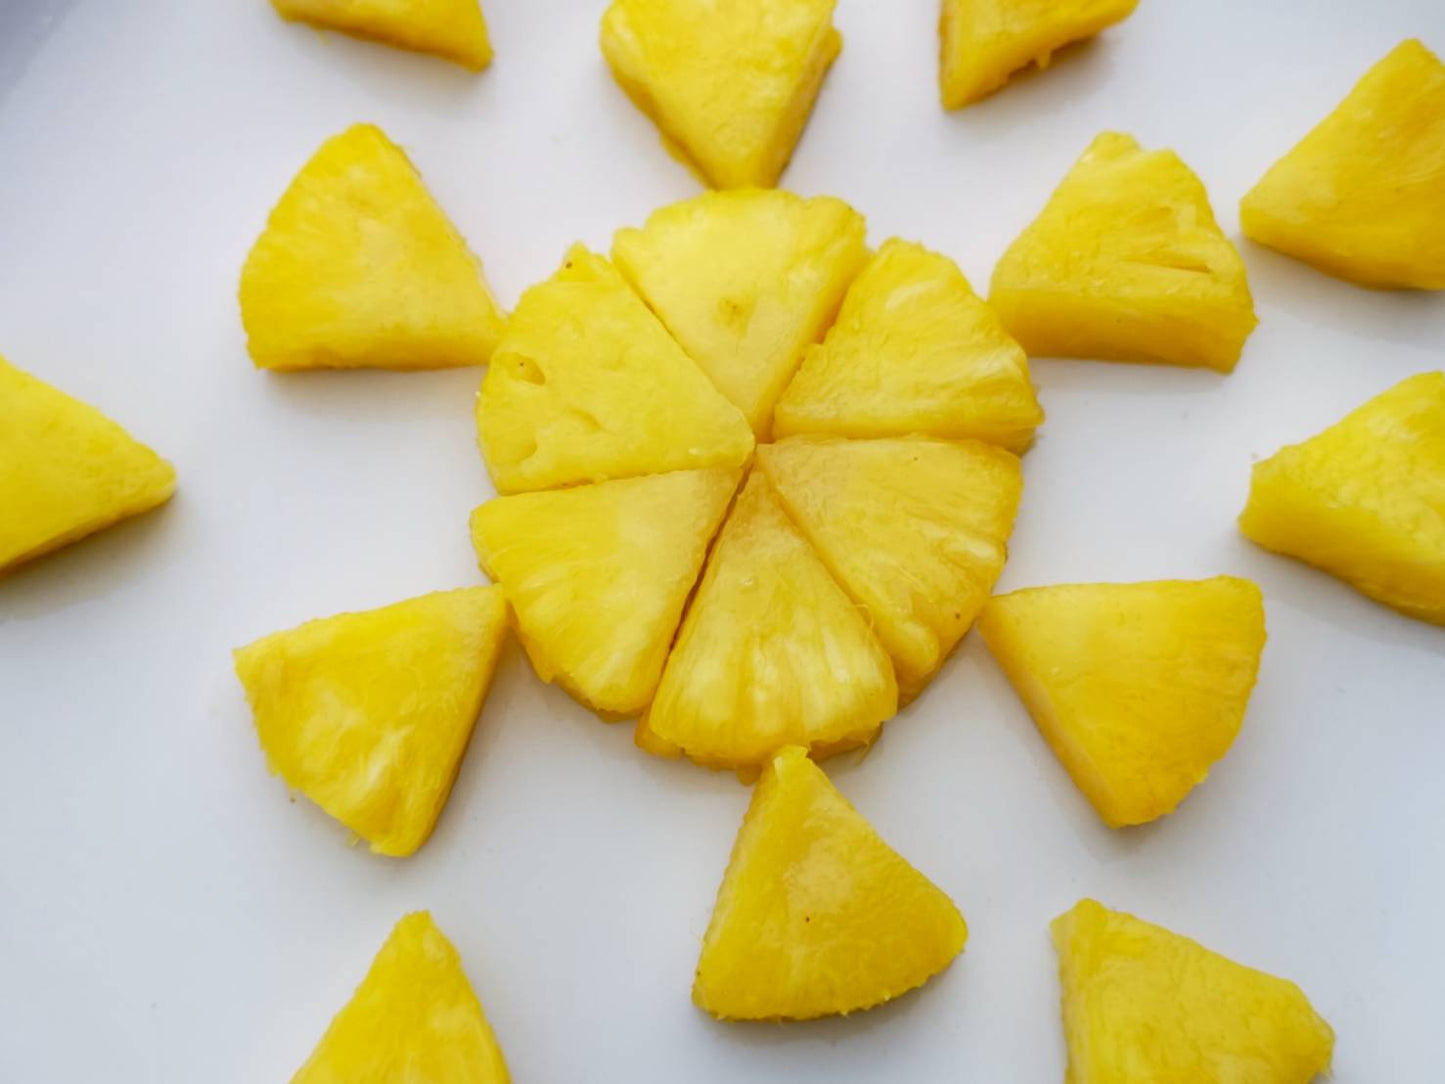 Frozen Sweet Golden Pineapple Chunks 慶得農 冷凍金鑽鳳梨切片